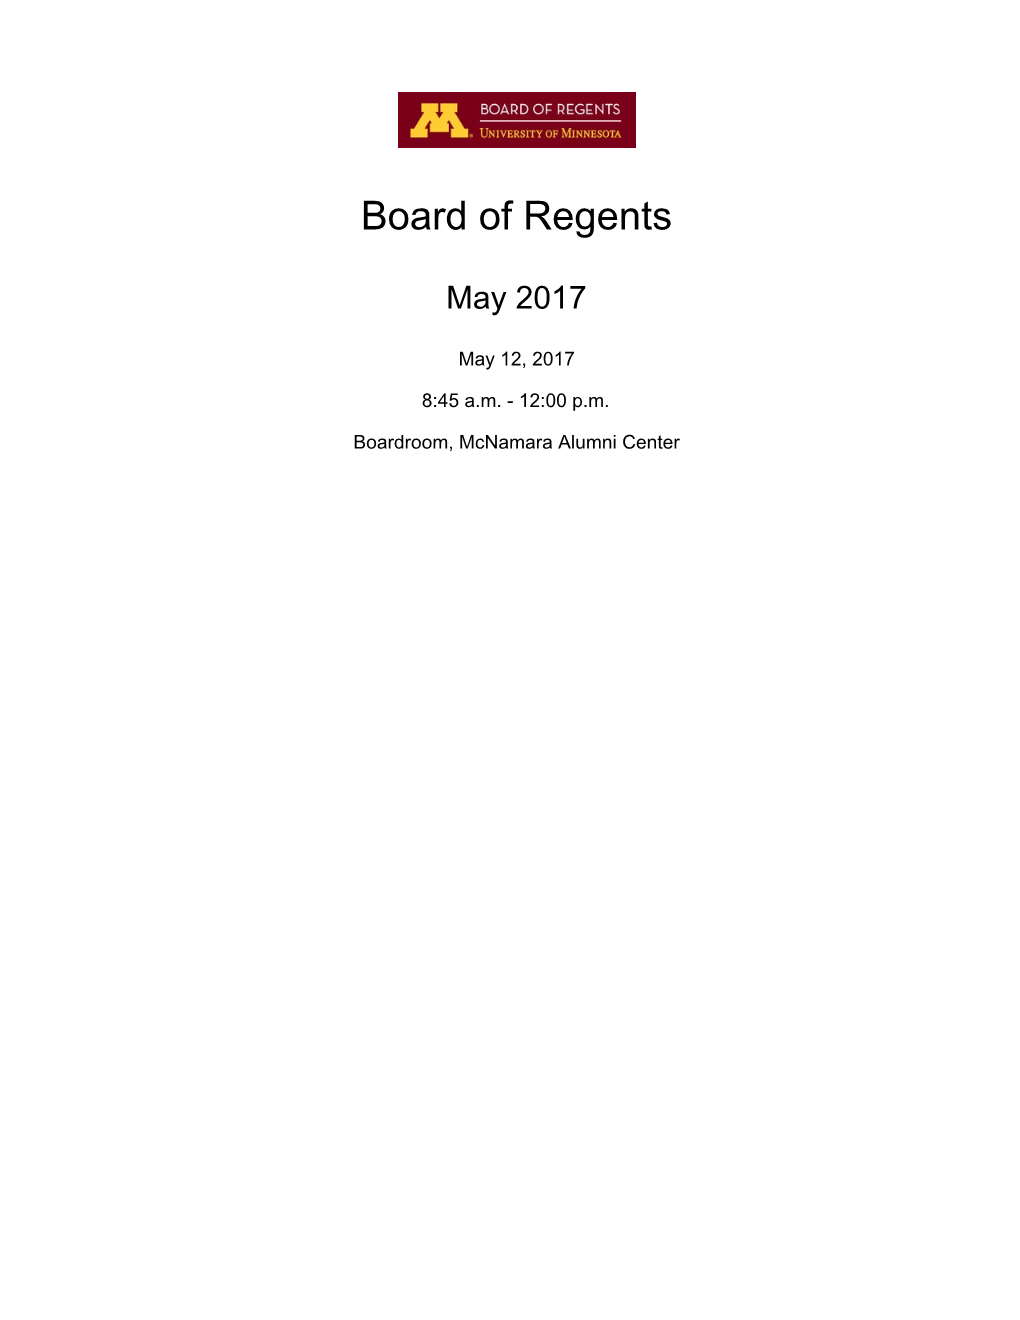 Board of Regents Docket Item Summary